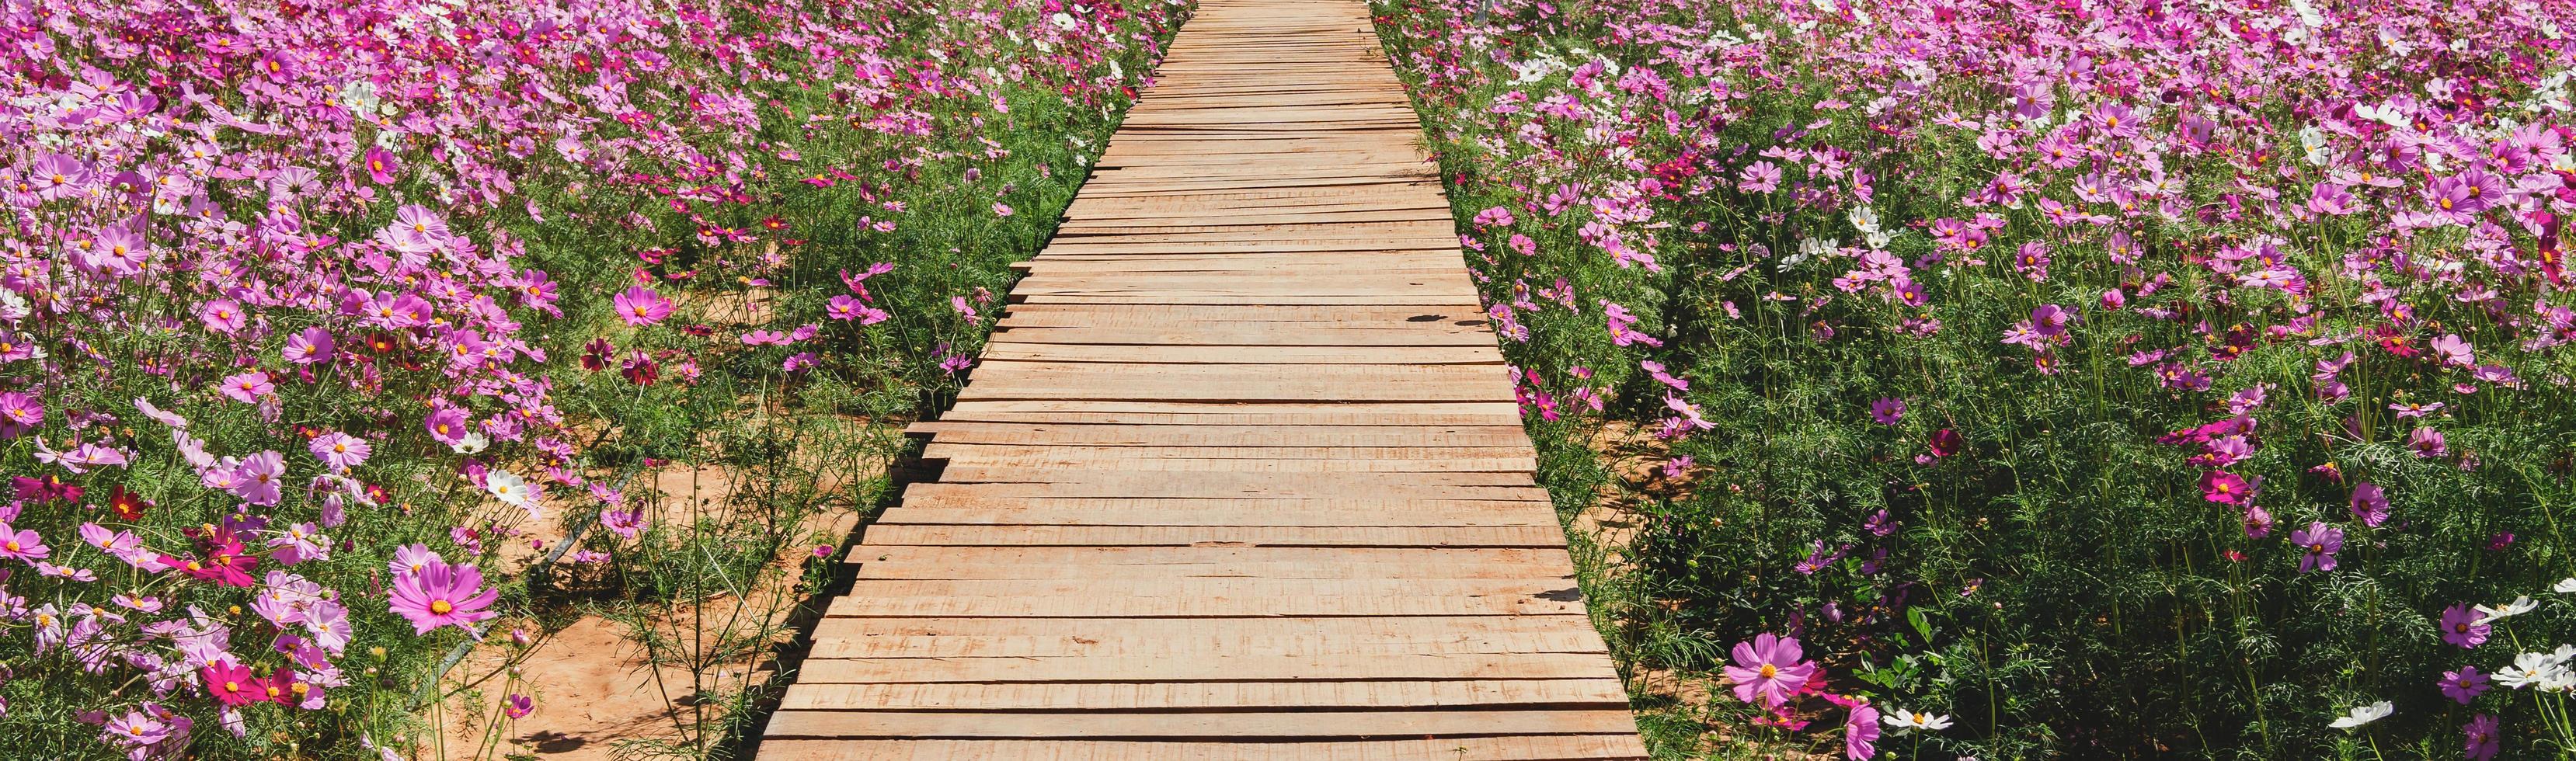 houten brug met bloemen in het park foto